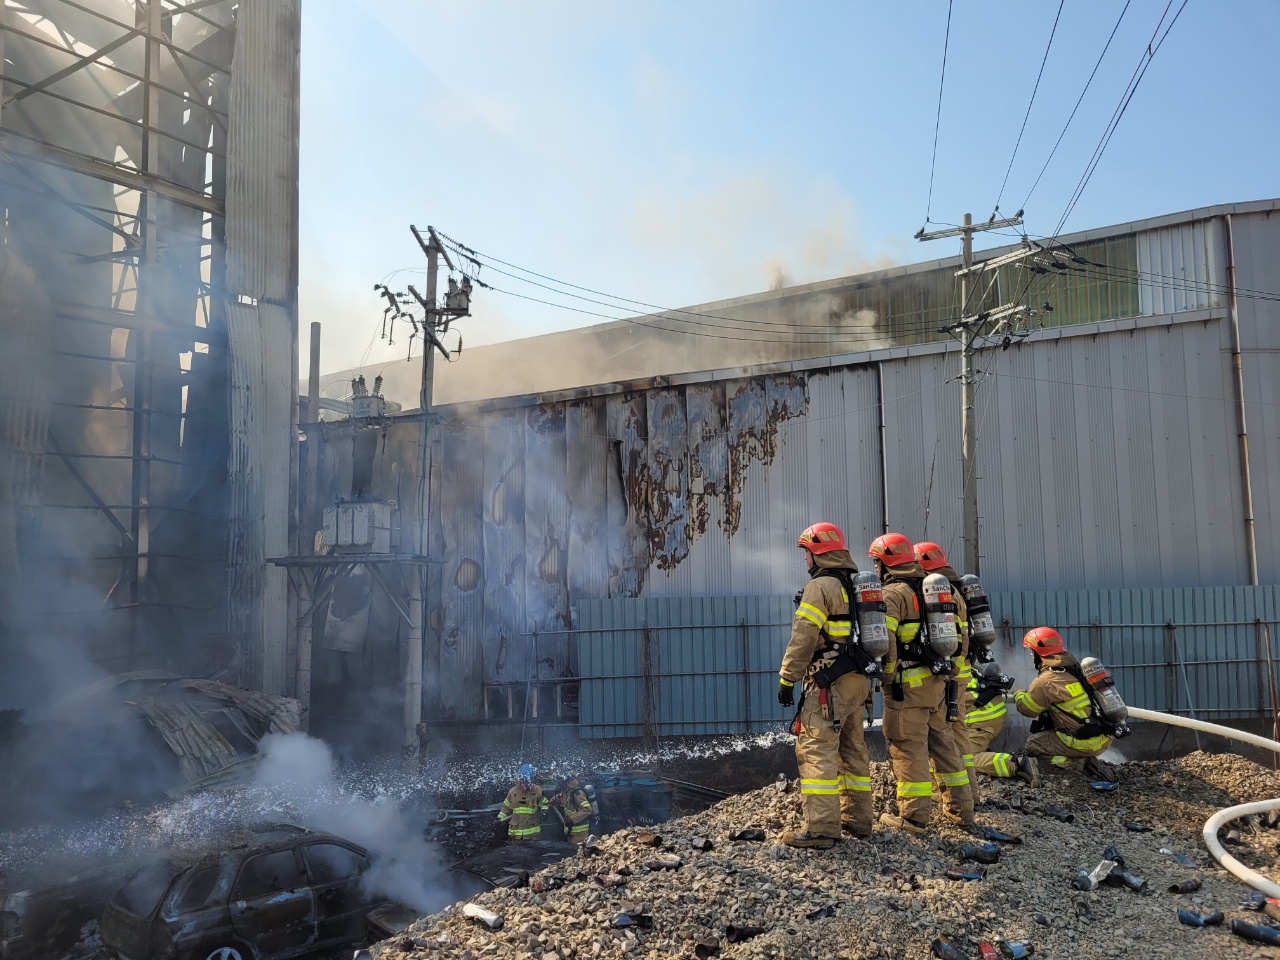 4일 오전 9시 7분쯤 울산 남구 황성동 A산업에서 불이 났다. 소방대원들이 잔불 정리를 하고 있다. 울산소방본부 제공